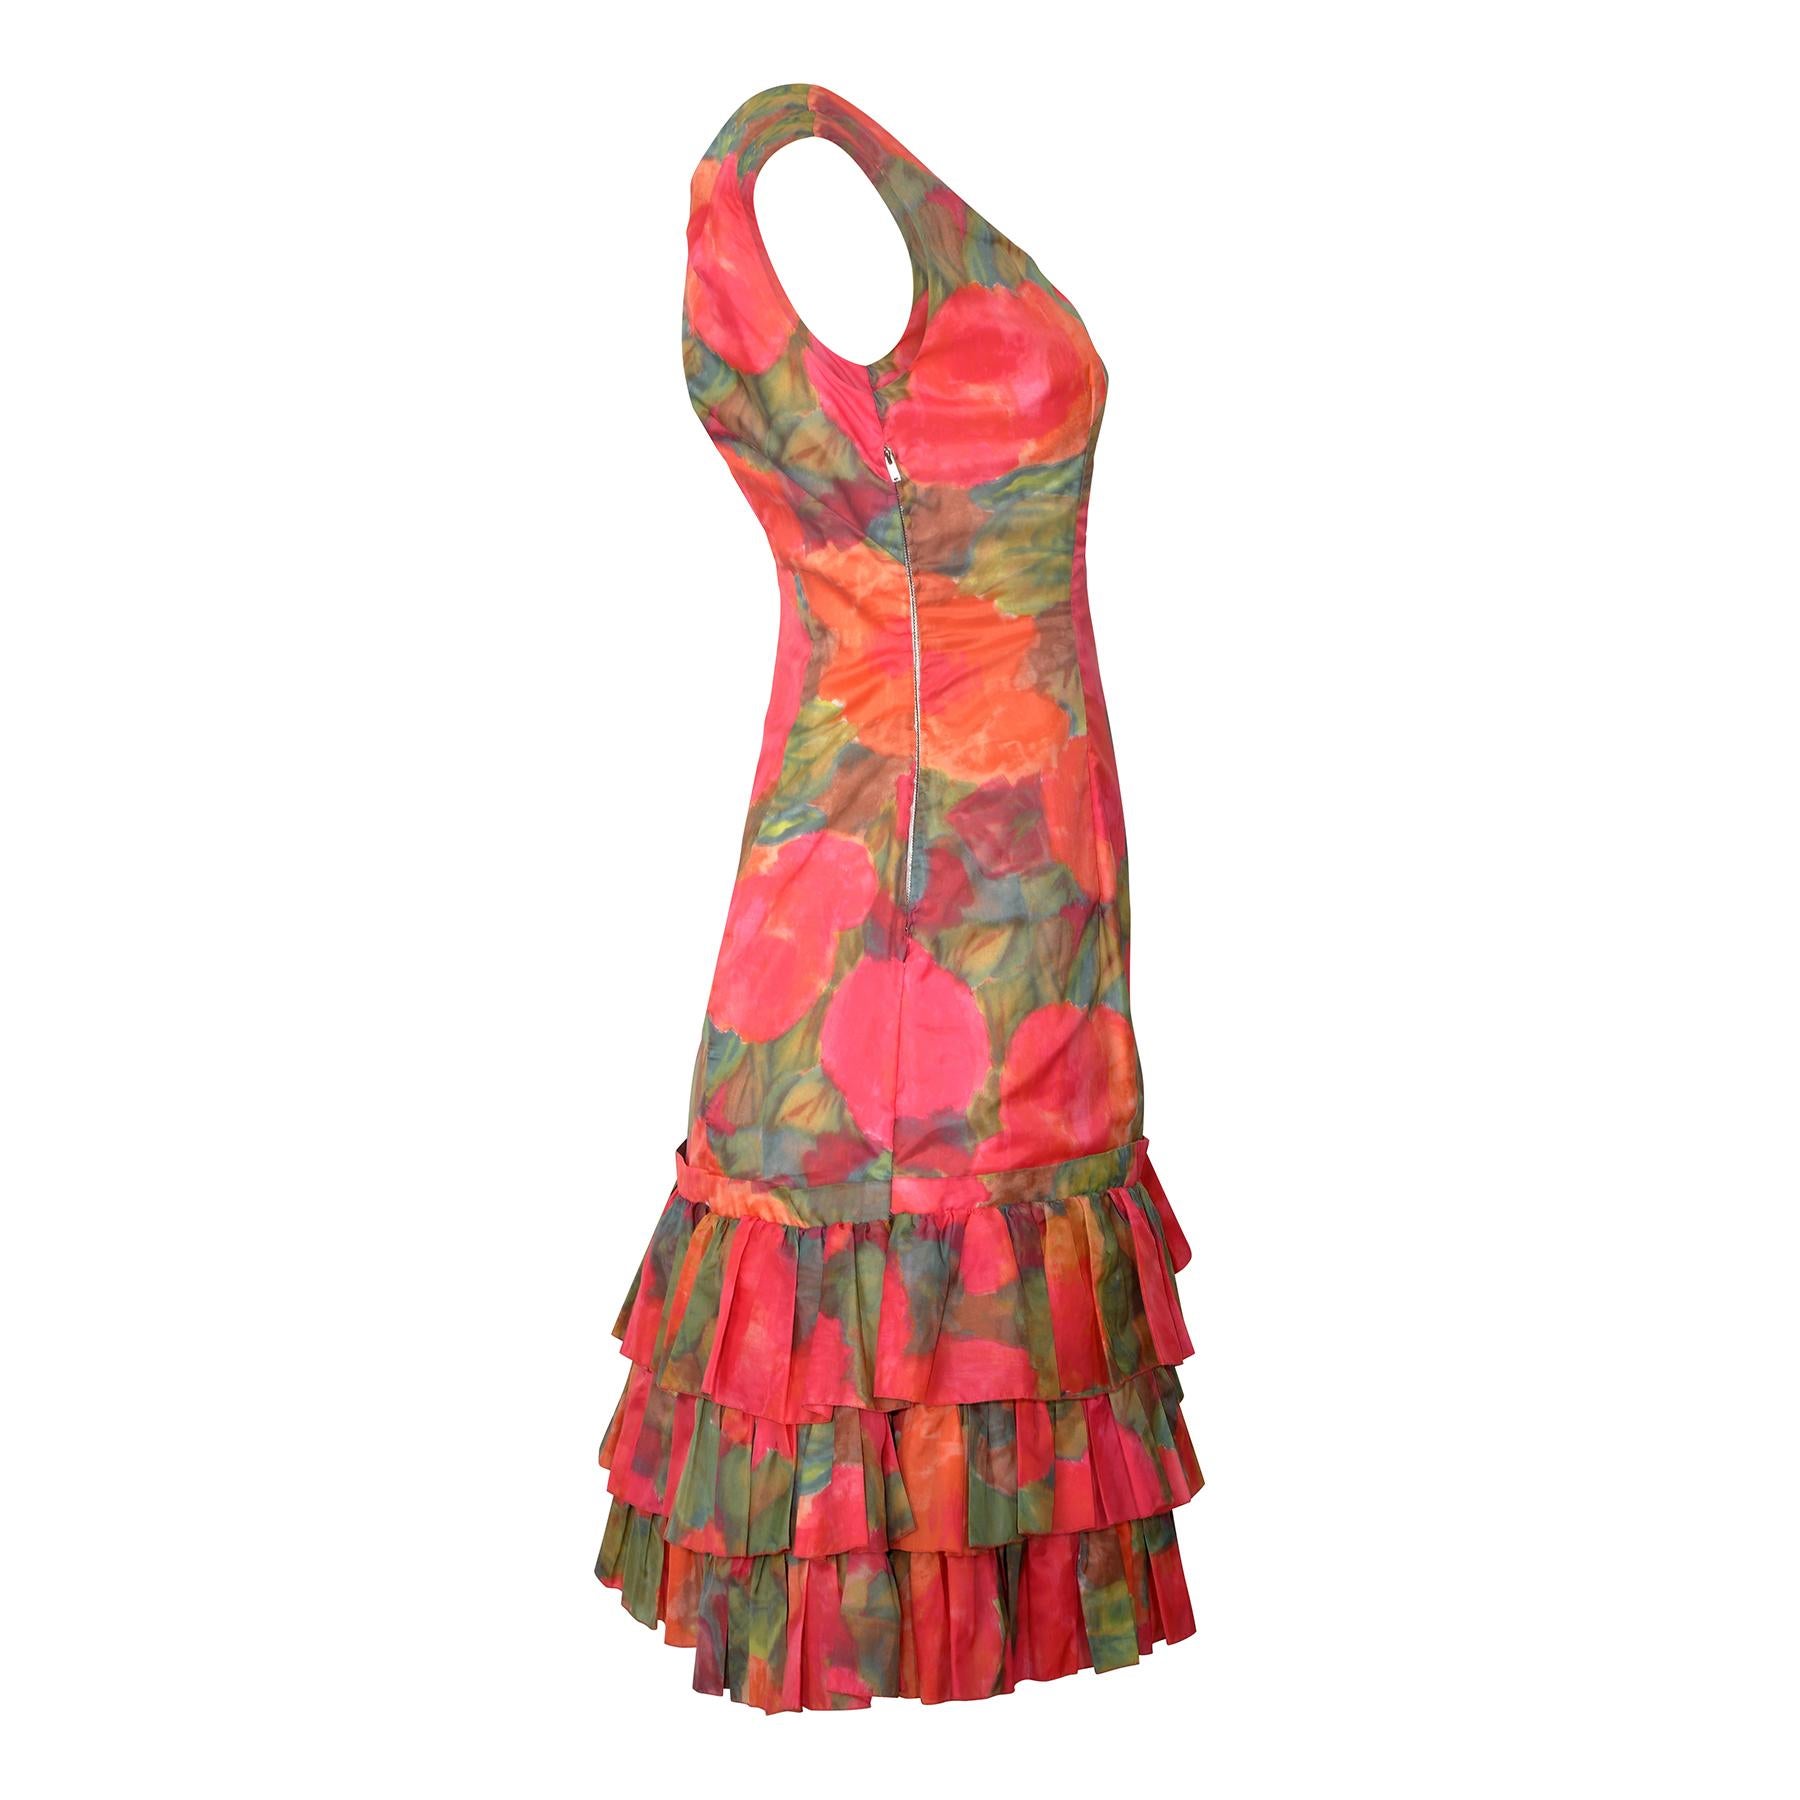 Gestuftes, gerafftes Kleid mit orangefarbenem und rosa Aquarell-Blumendruck, 1960er Jahre (Pink) im Angebot